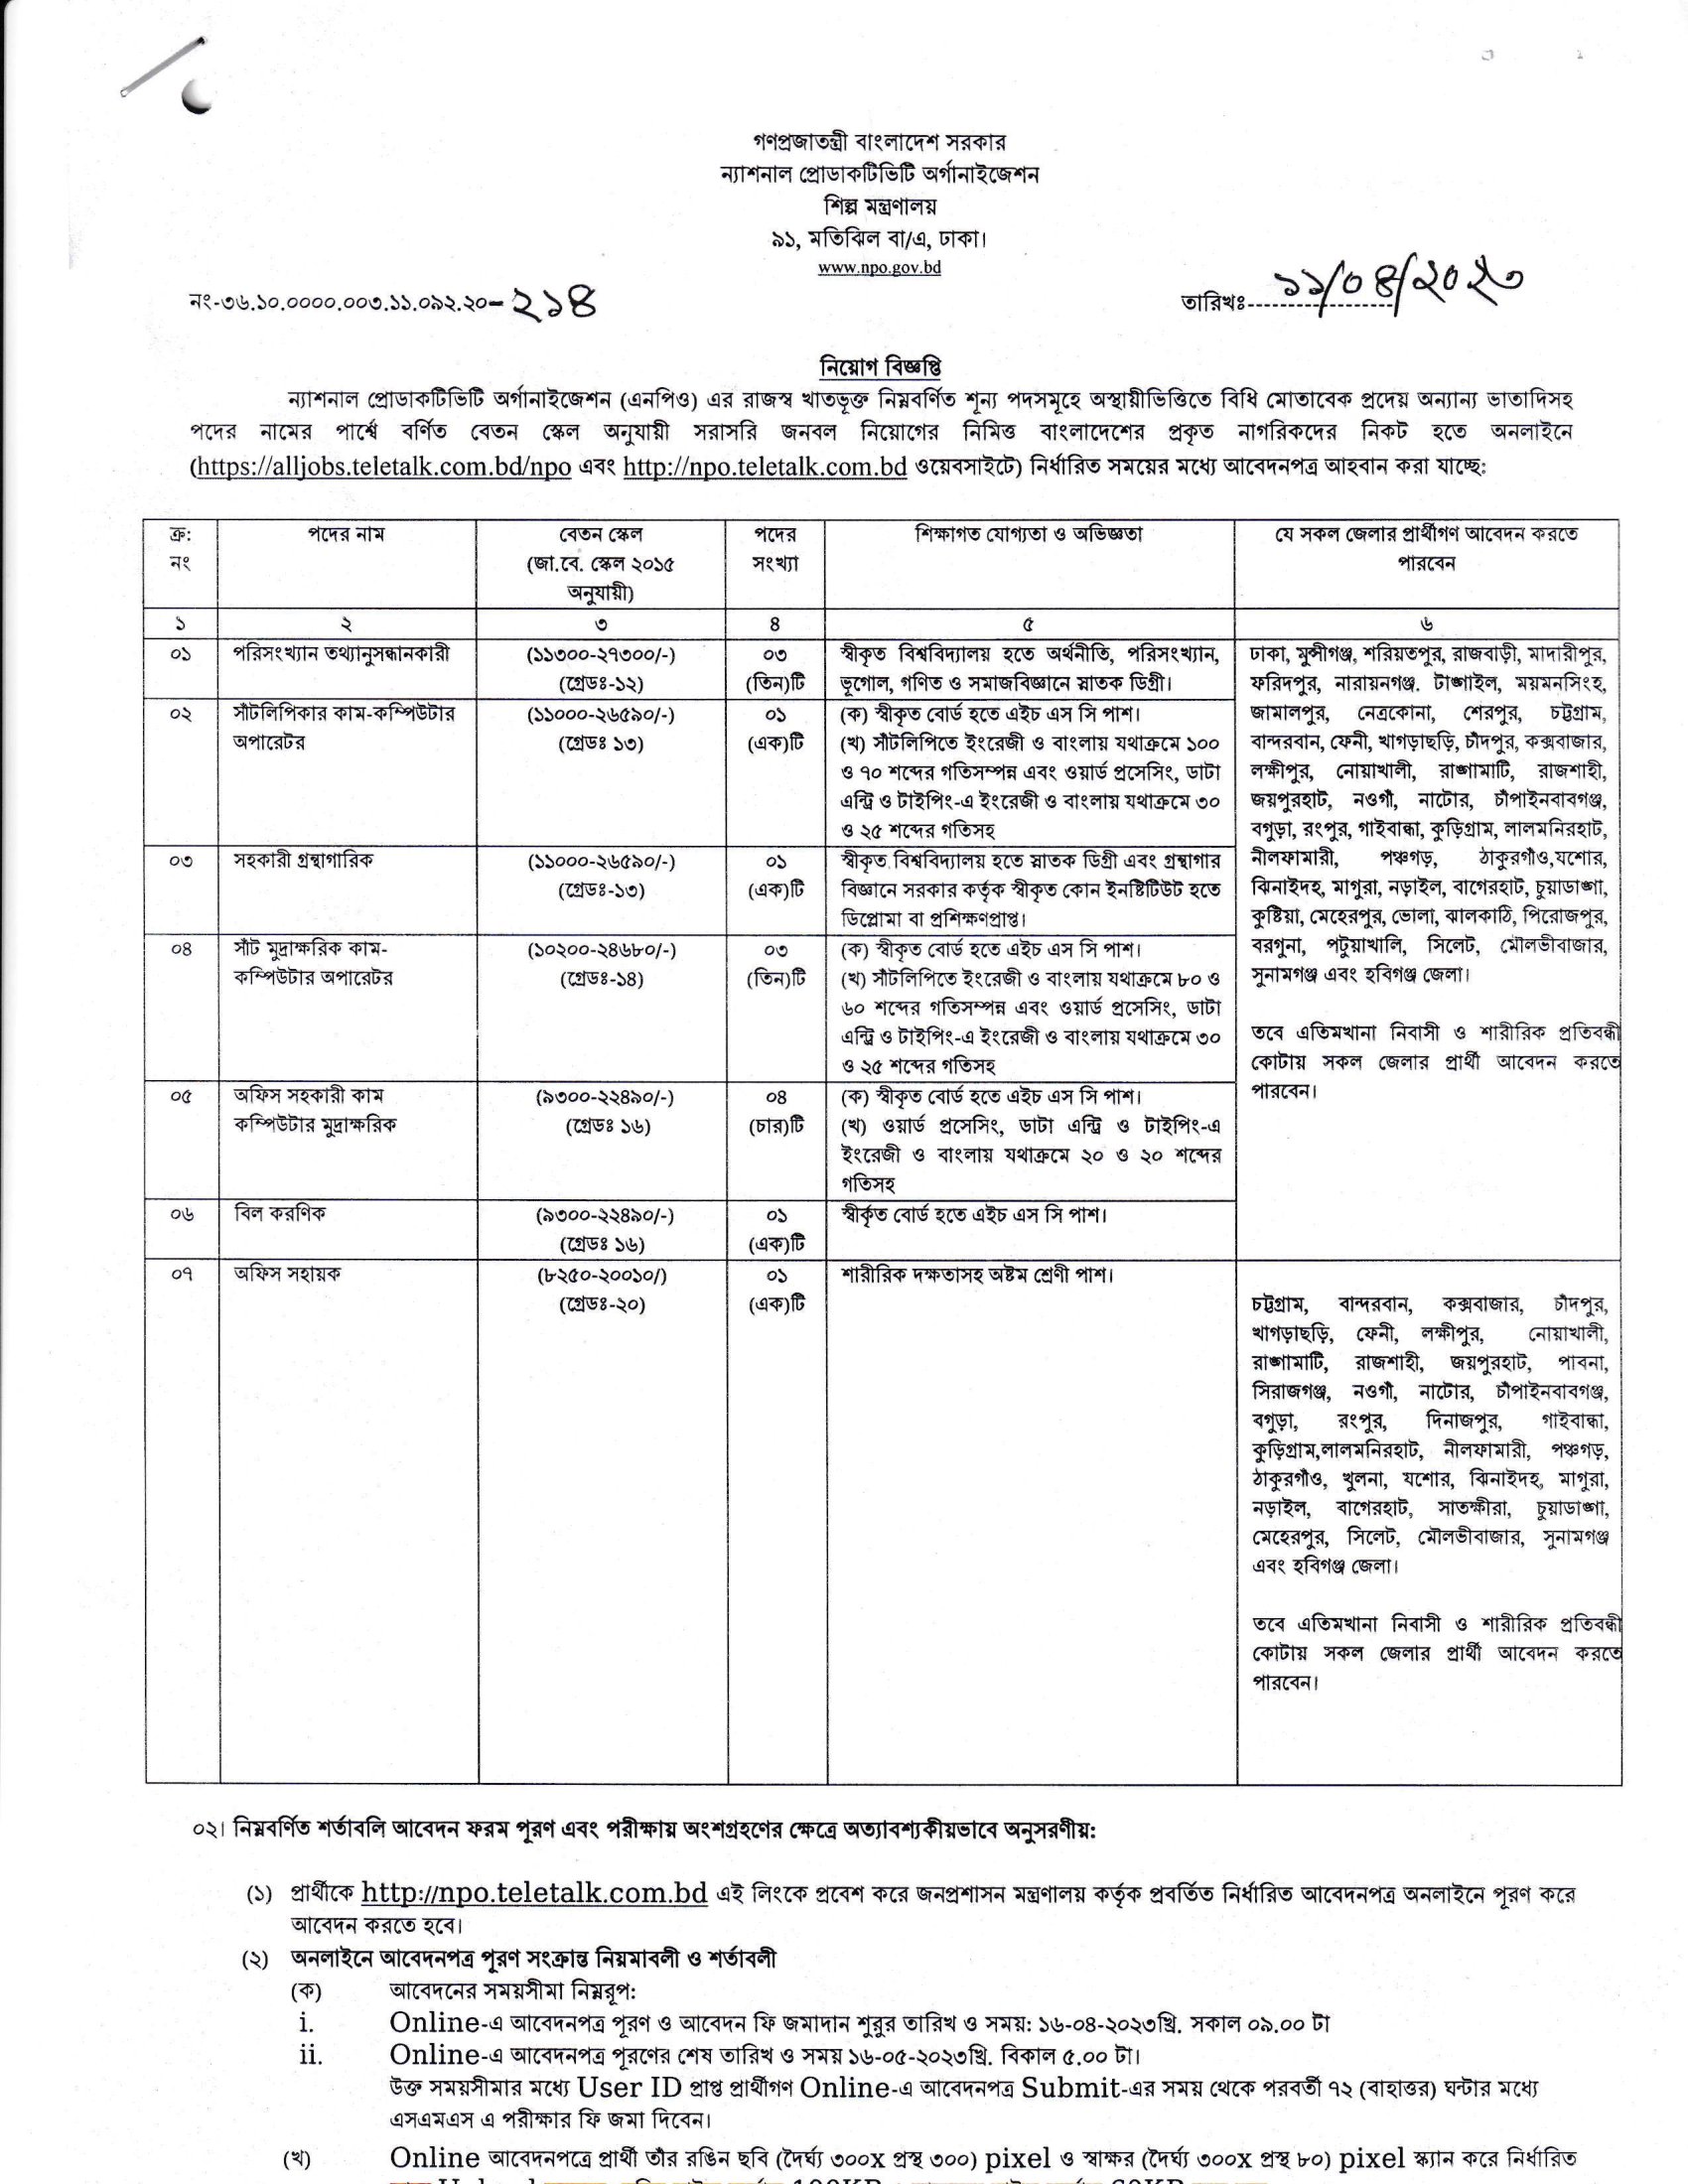 চলমান সকল সরকারি চাকরির নিয়োগ তালিকা ২০২৩ - Ongoing all Government Job Circular 2023 - সরকারি চাকরির বিজ্ঞপ্তি 2023 - bd govt job circular 2023